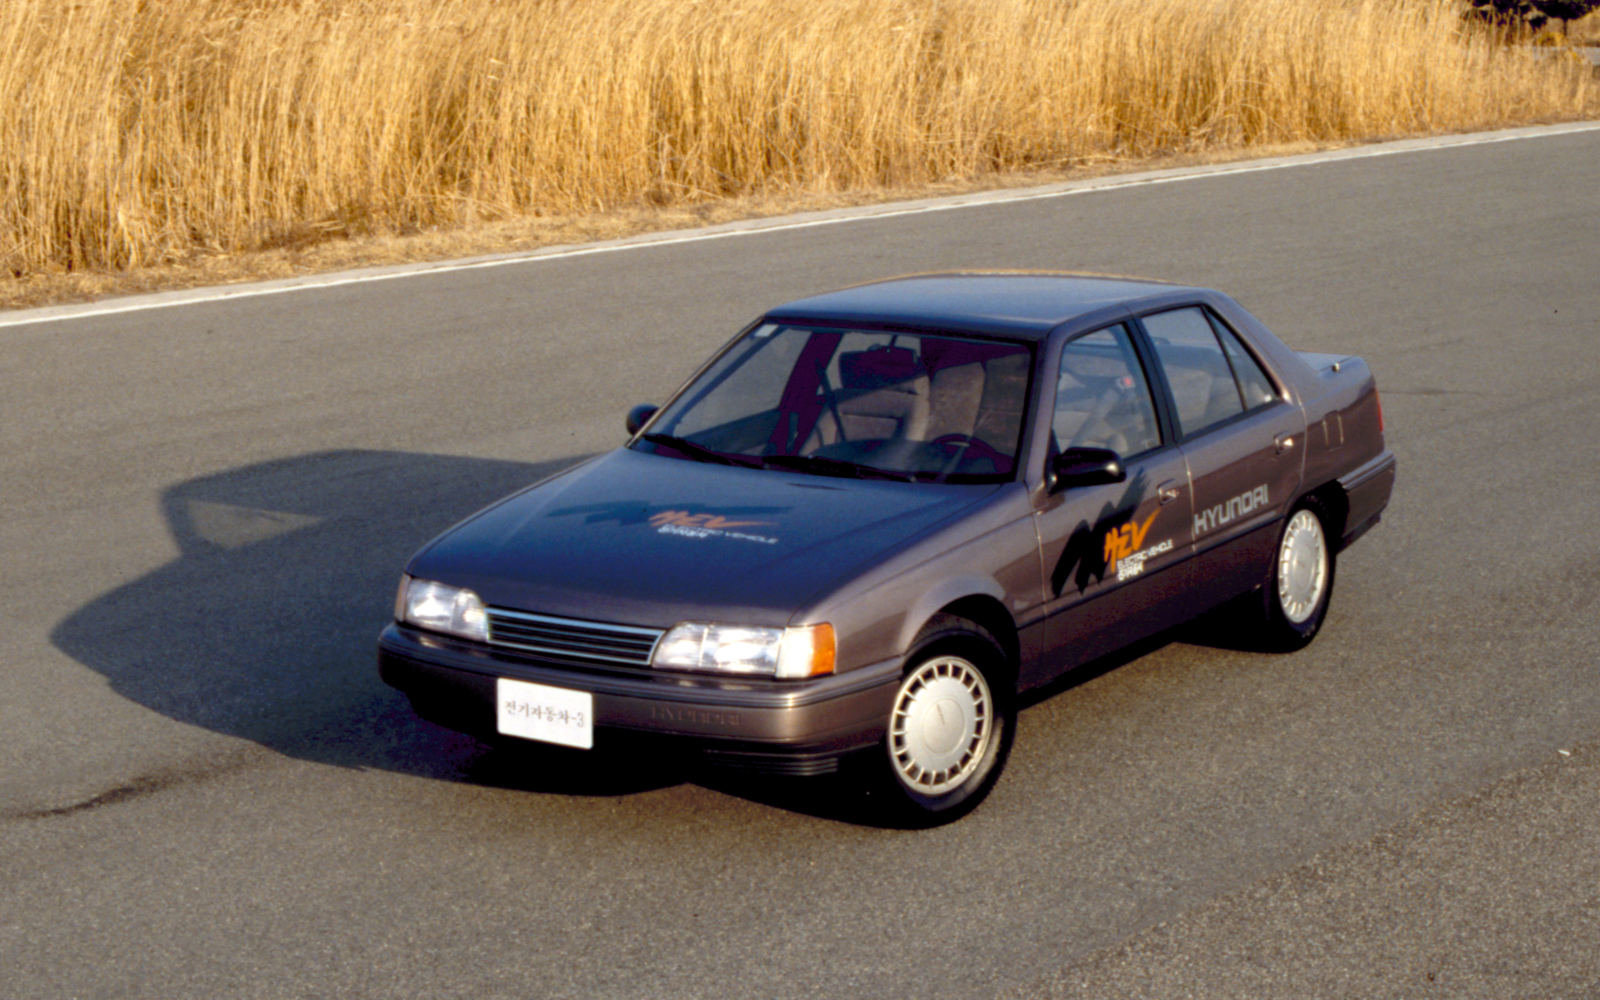 Hyundai Sonata Electric Vehicle představoval na začátku 90. let 20. století první pokusy značky na poli elektromobilů